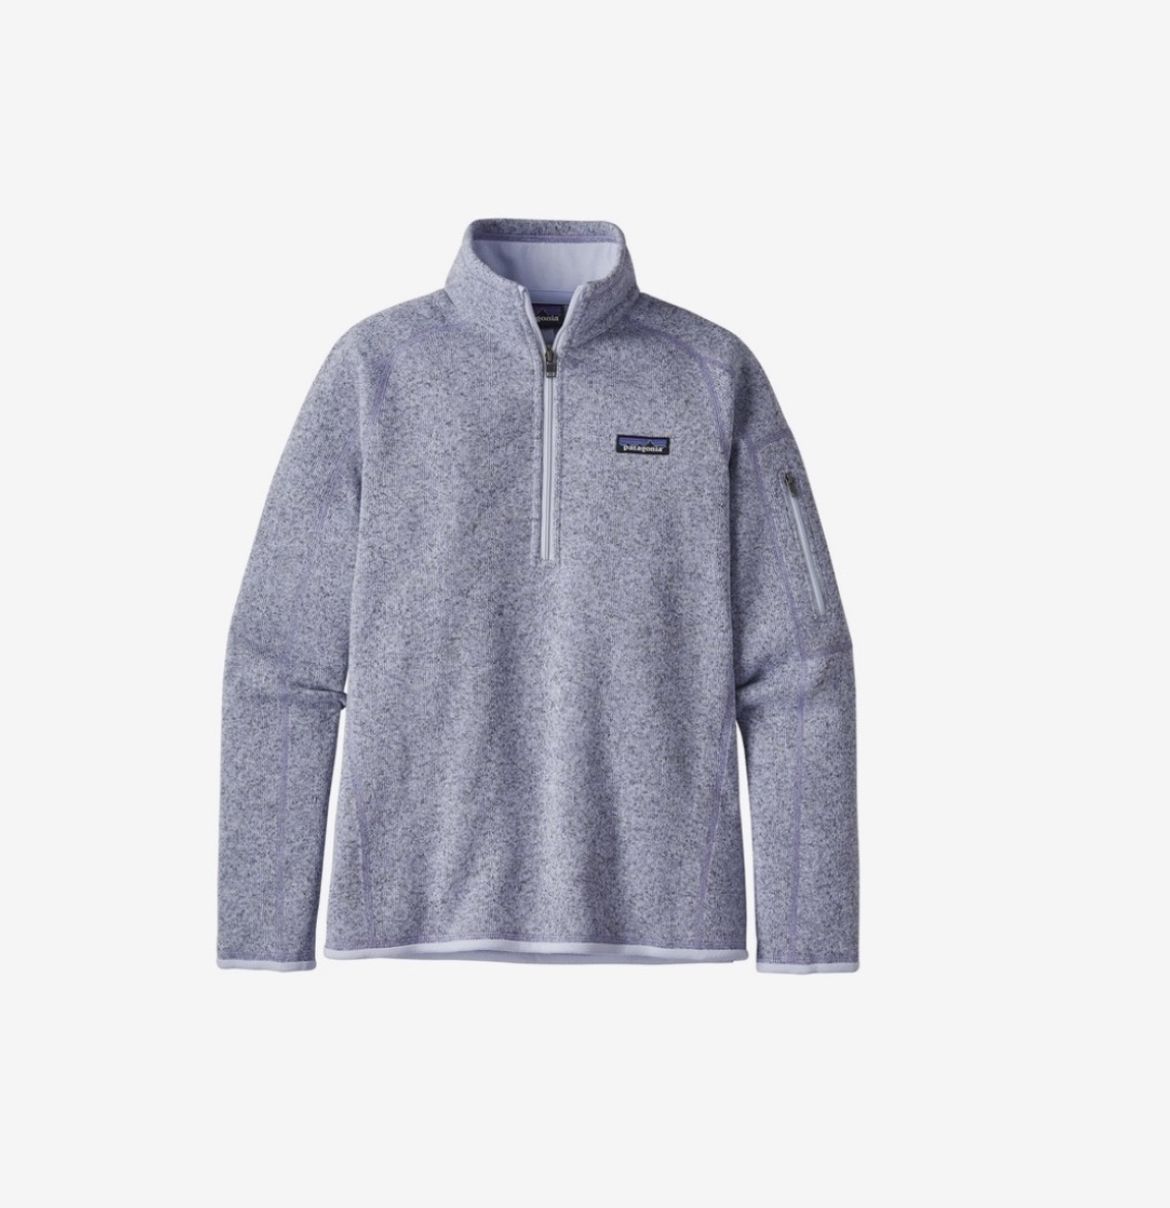 Women’s Patagonia Quarter Zip Sweater Jacket